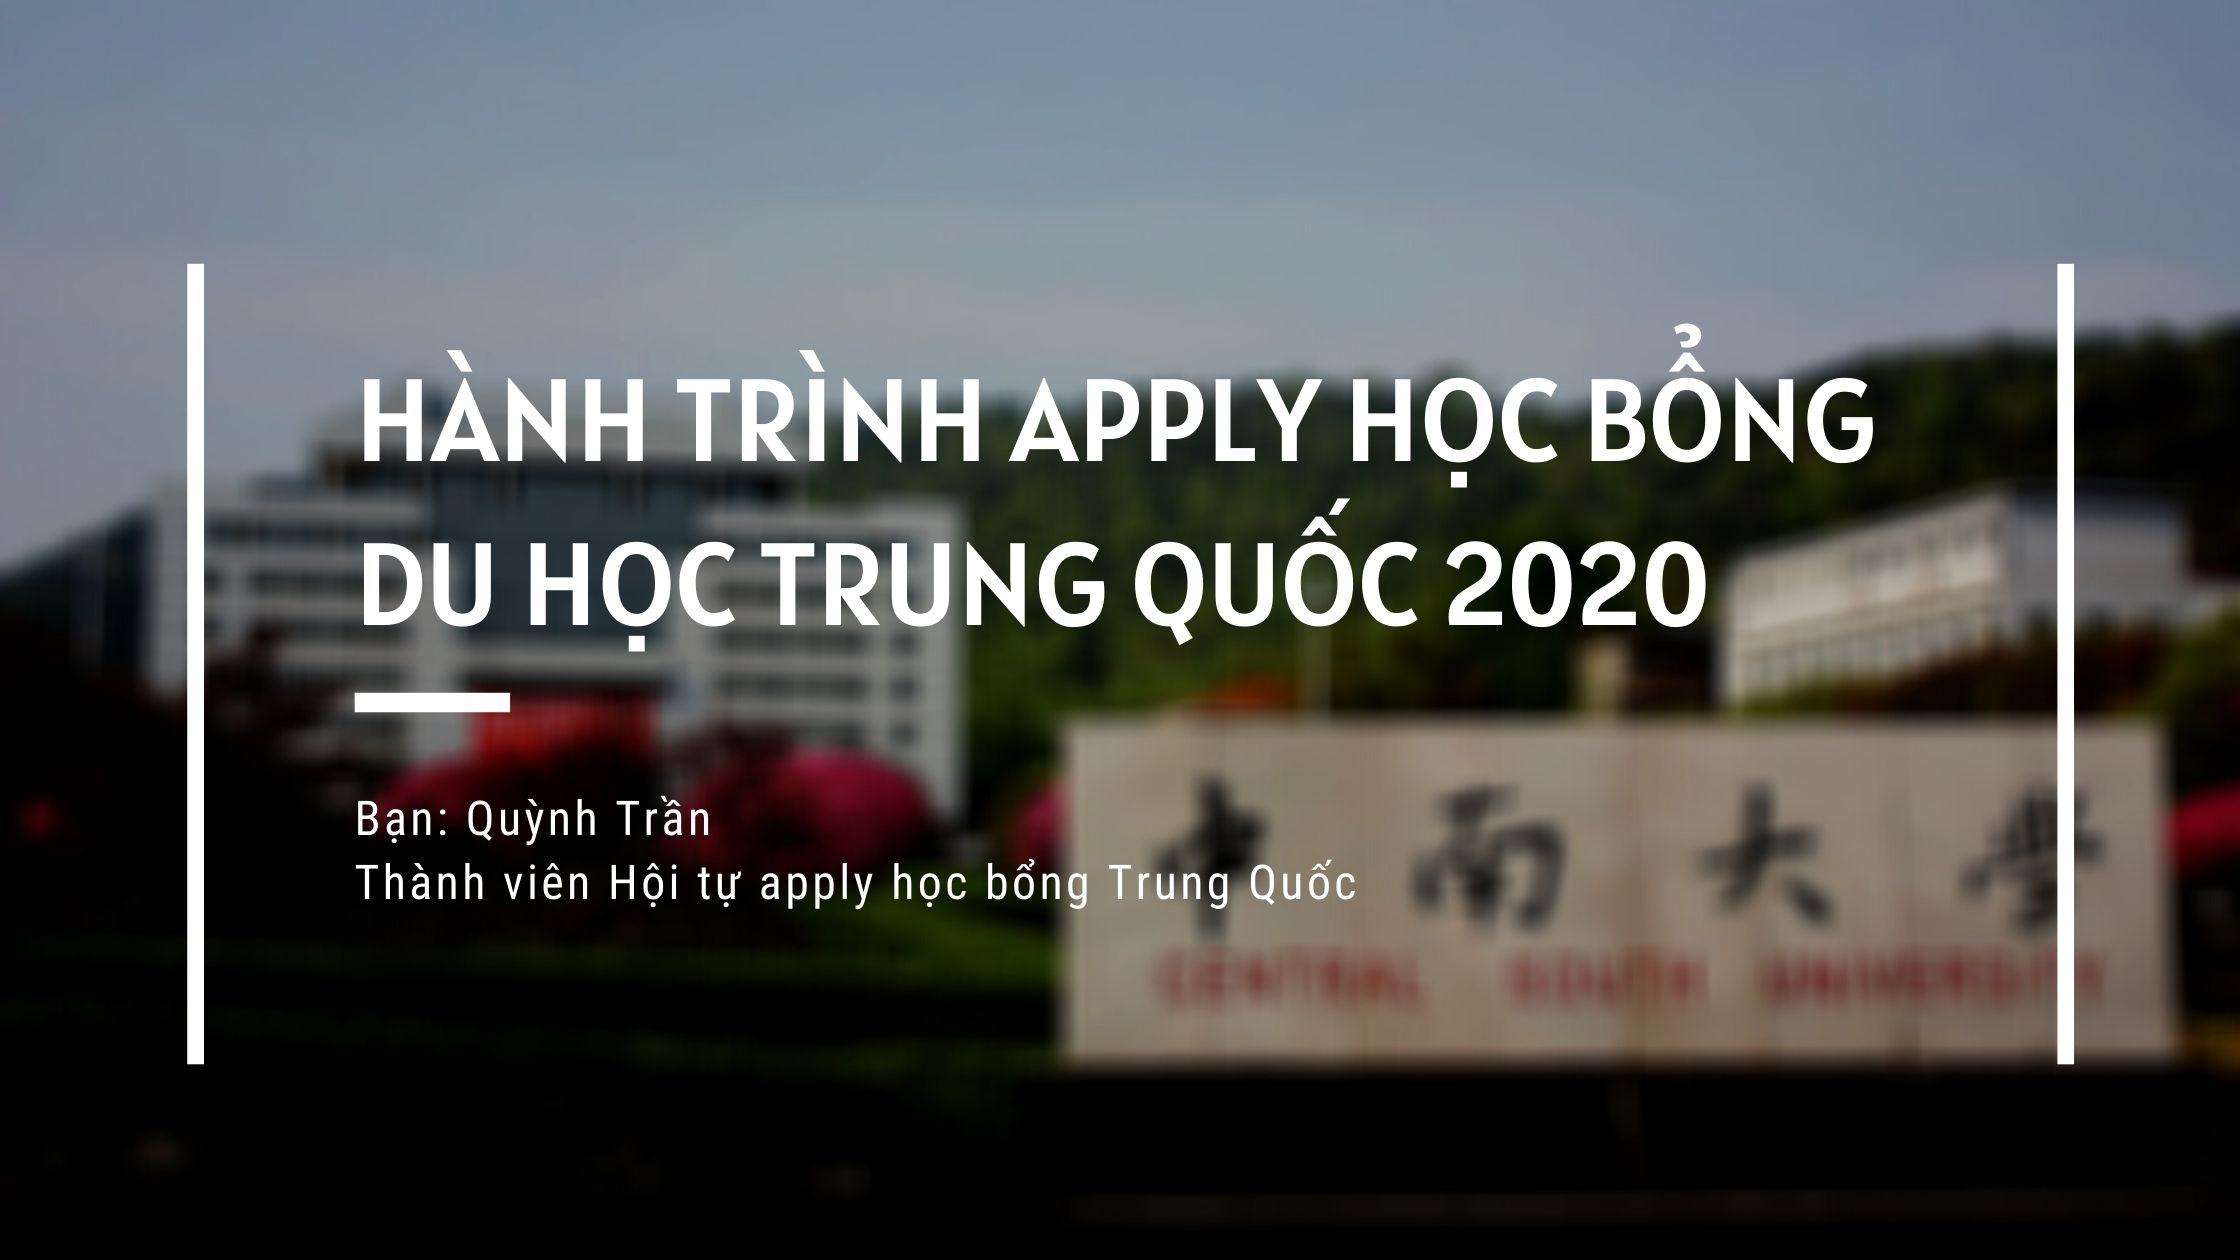 Hành trình đạt 5 học bổng - Vinh danh người thắng cuộc 2020 - Quỳnh Trần - Riba.vn